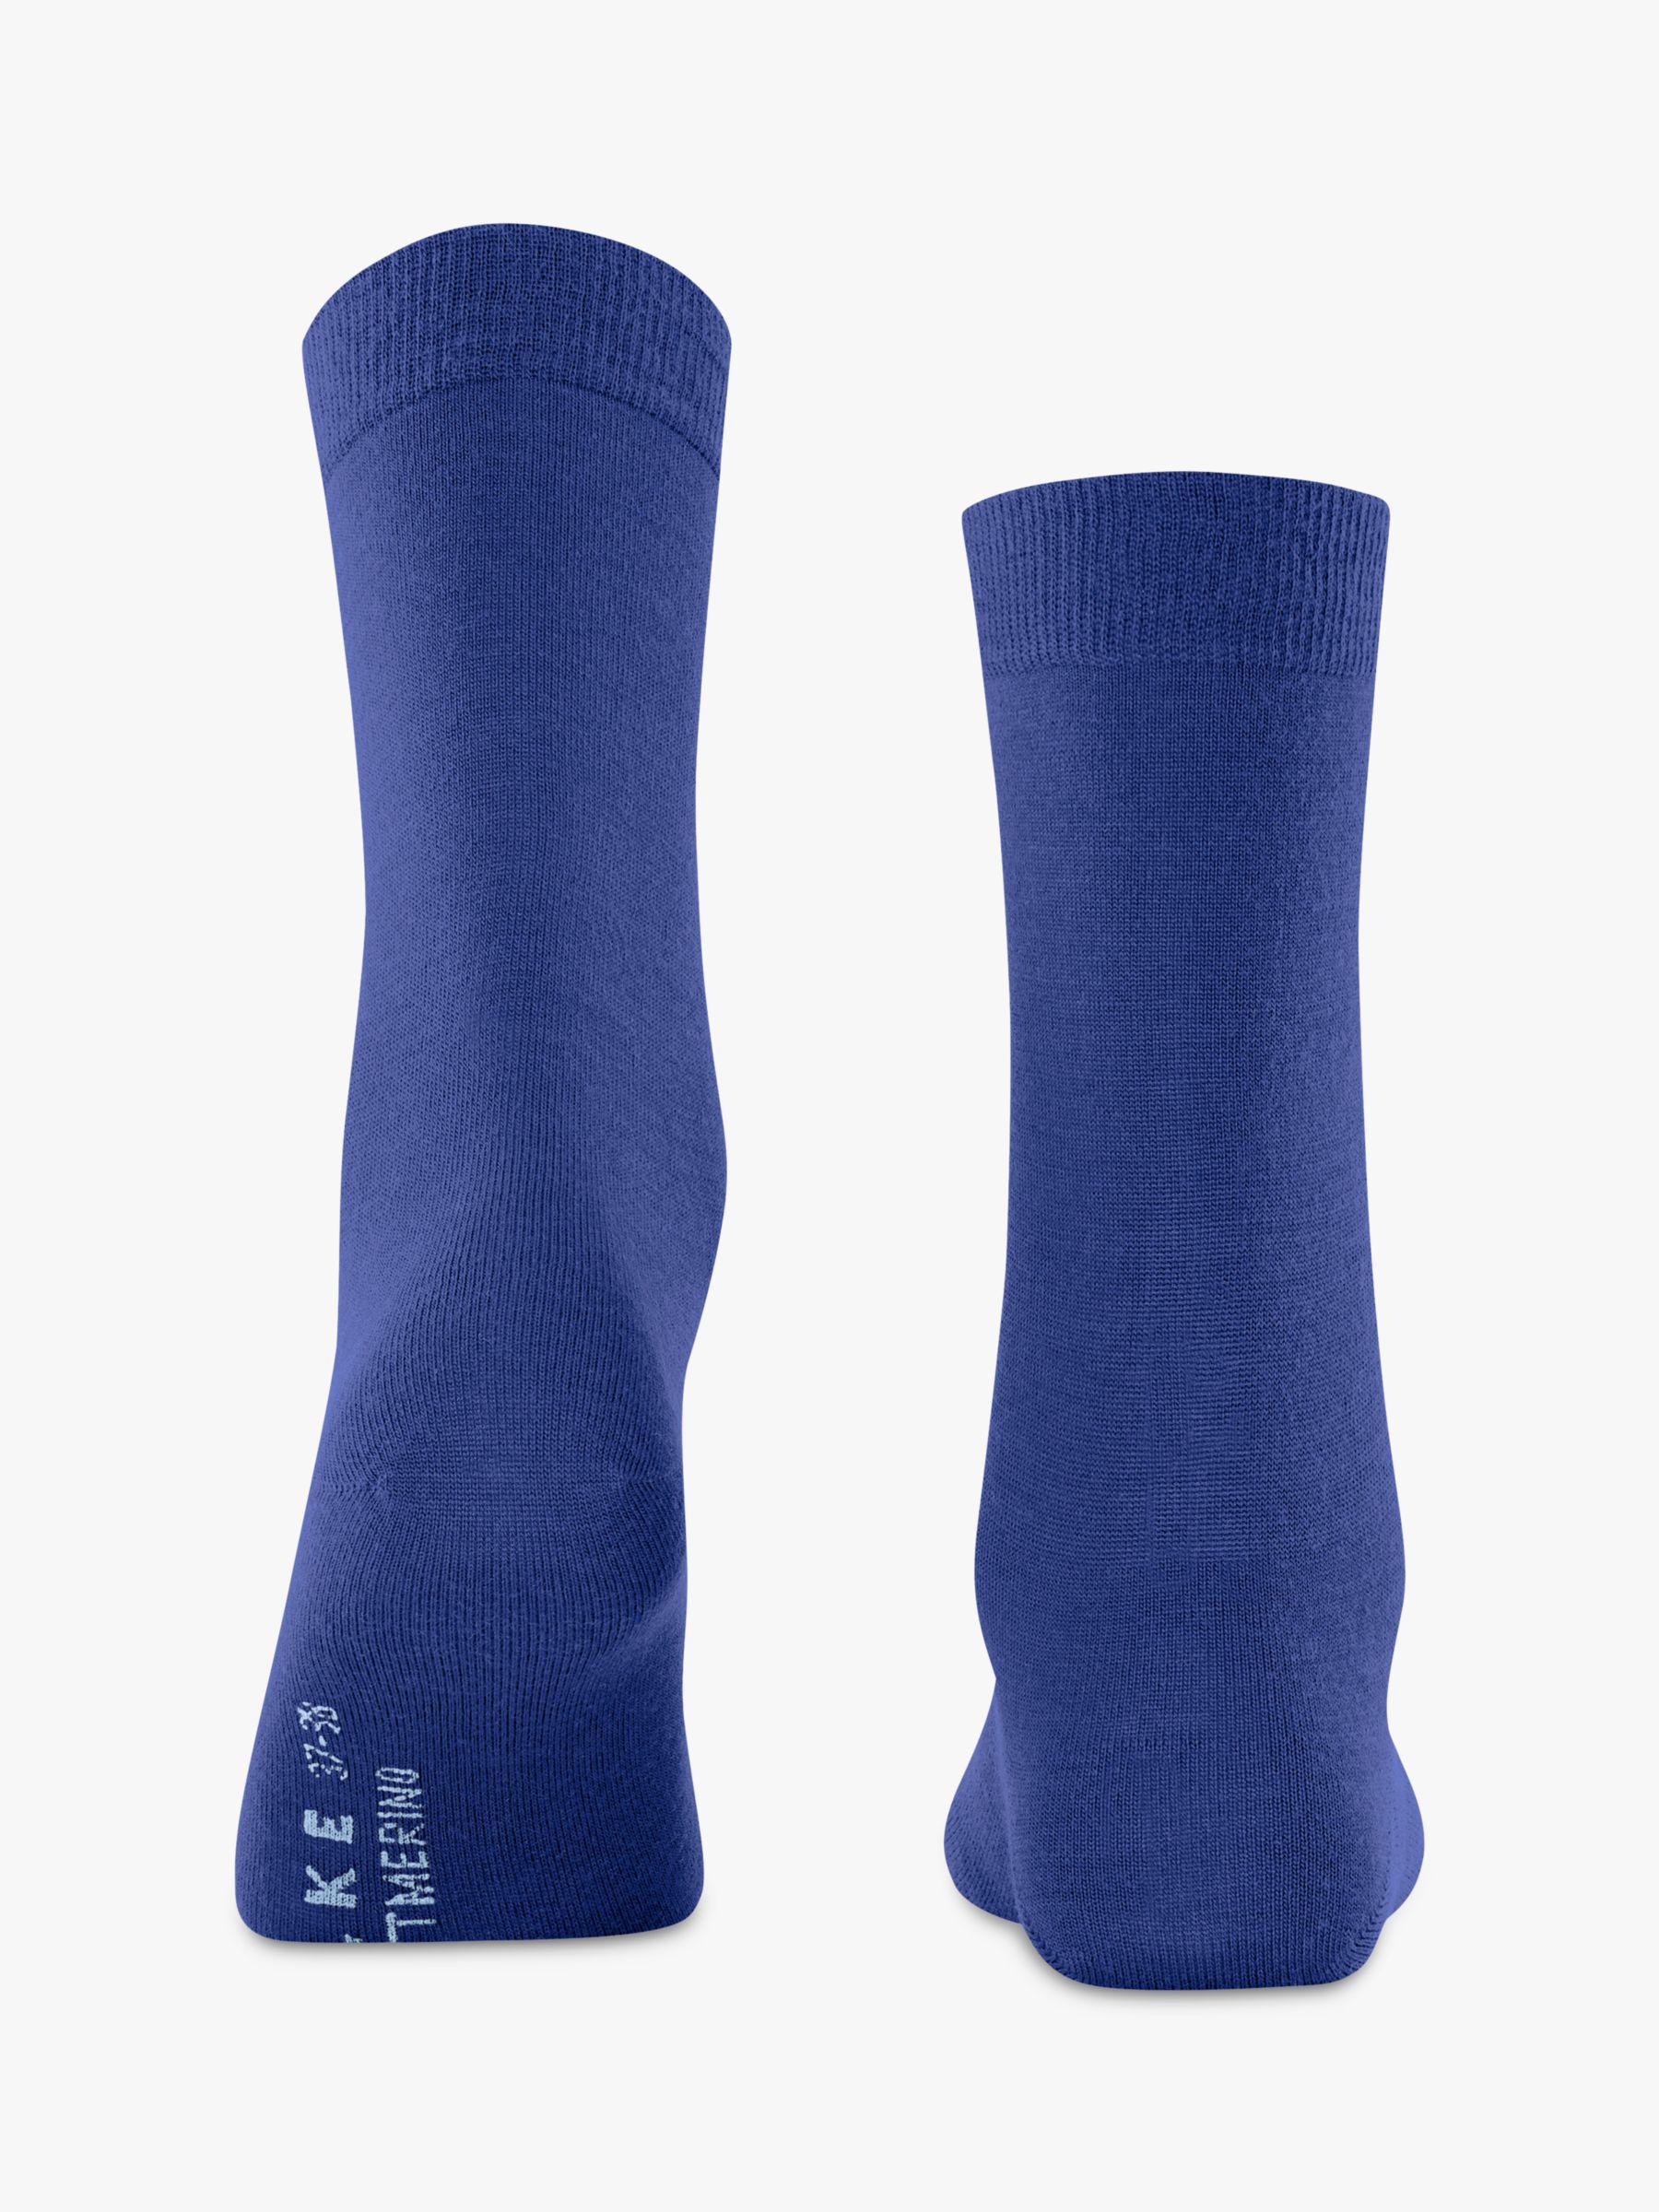 FALKE Soft Merino Blend Ankle Socks, Imperial at John Lewis & Partners